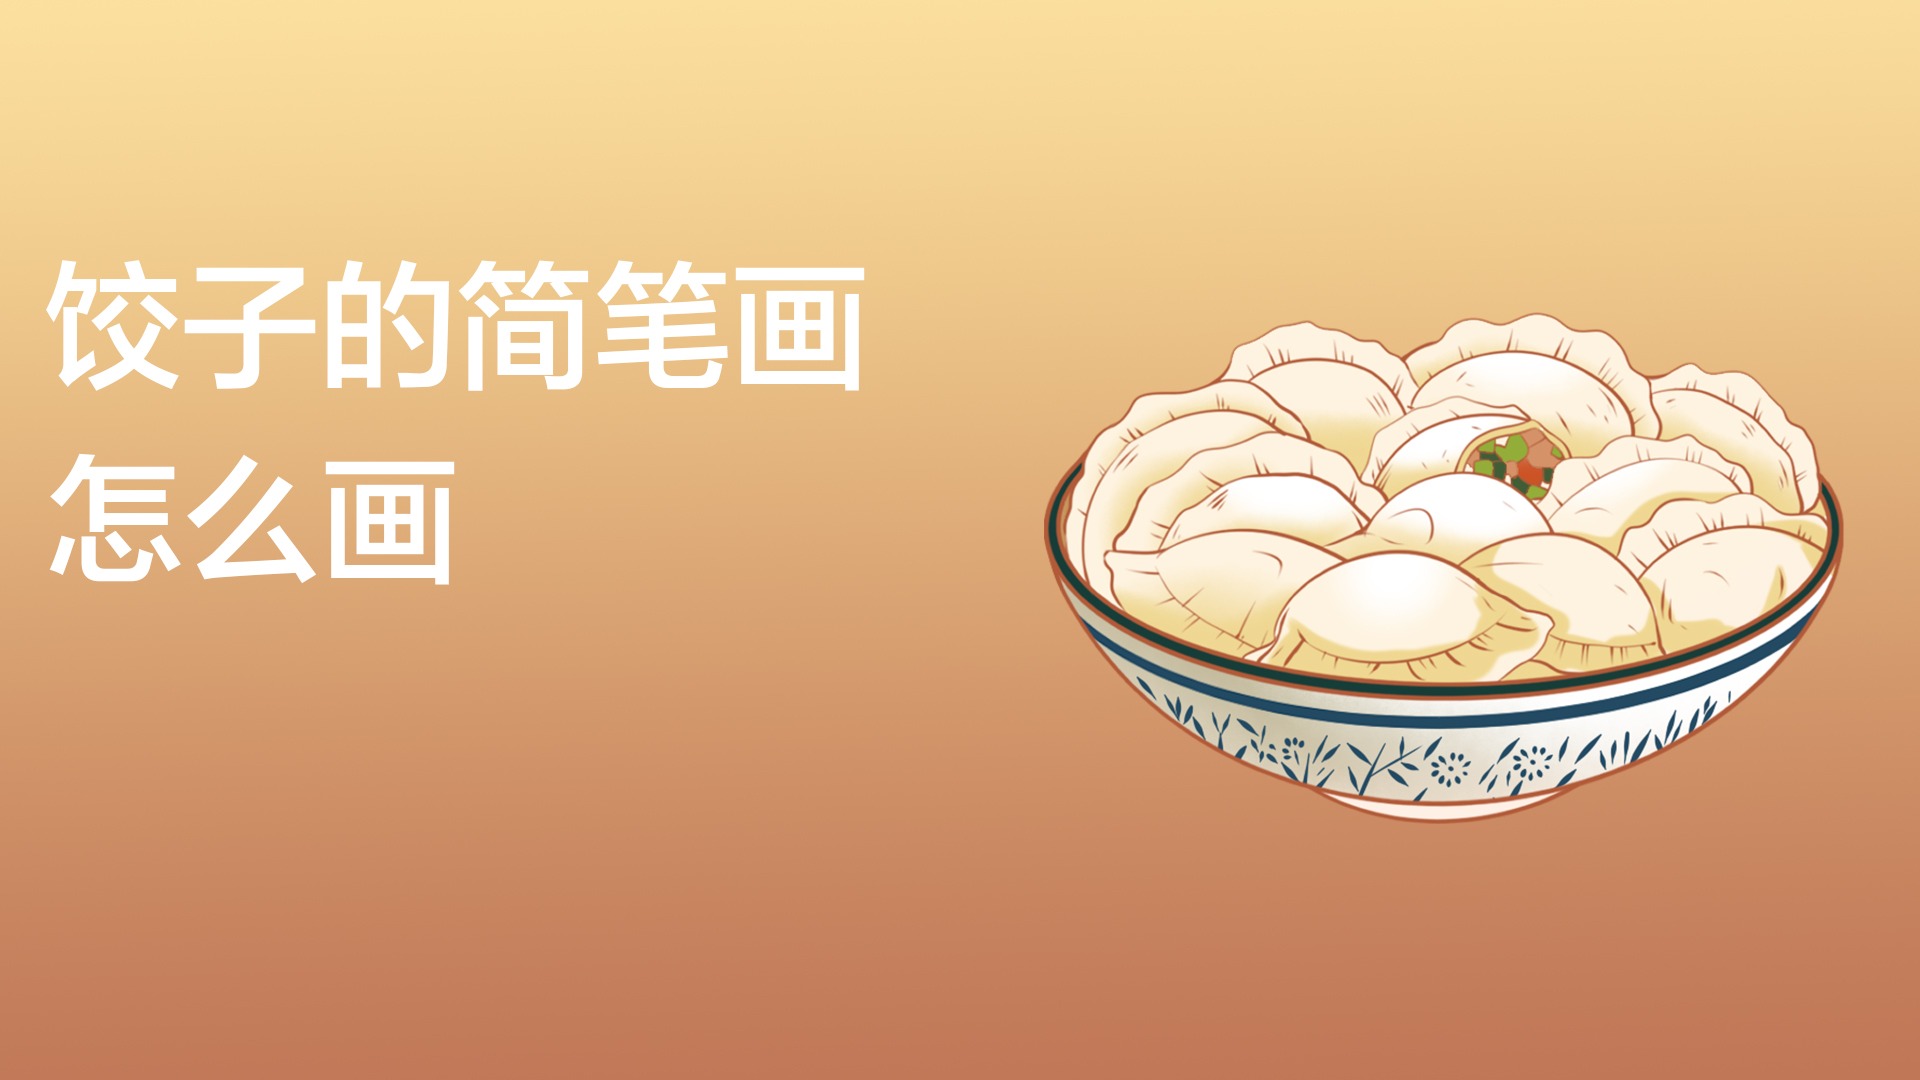 饺子简笔画教程,给冬至增添气氛!